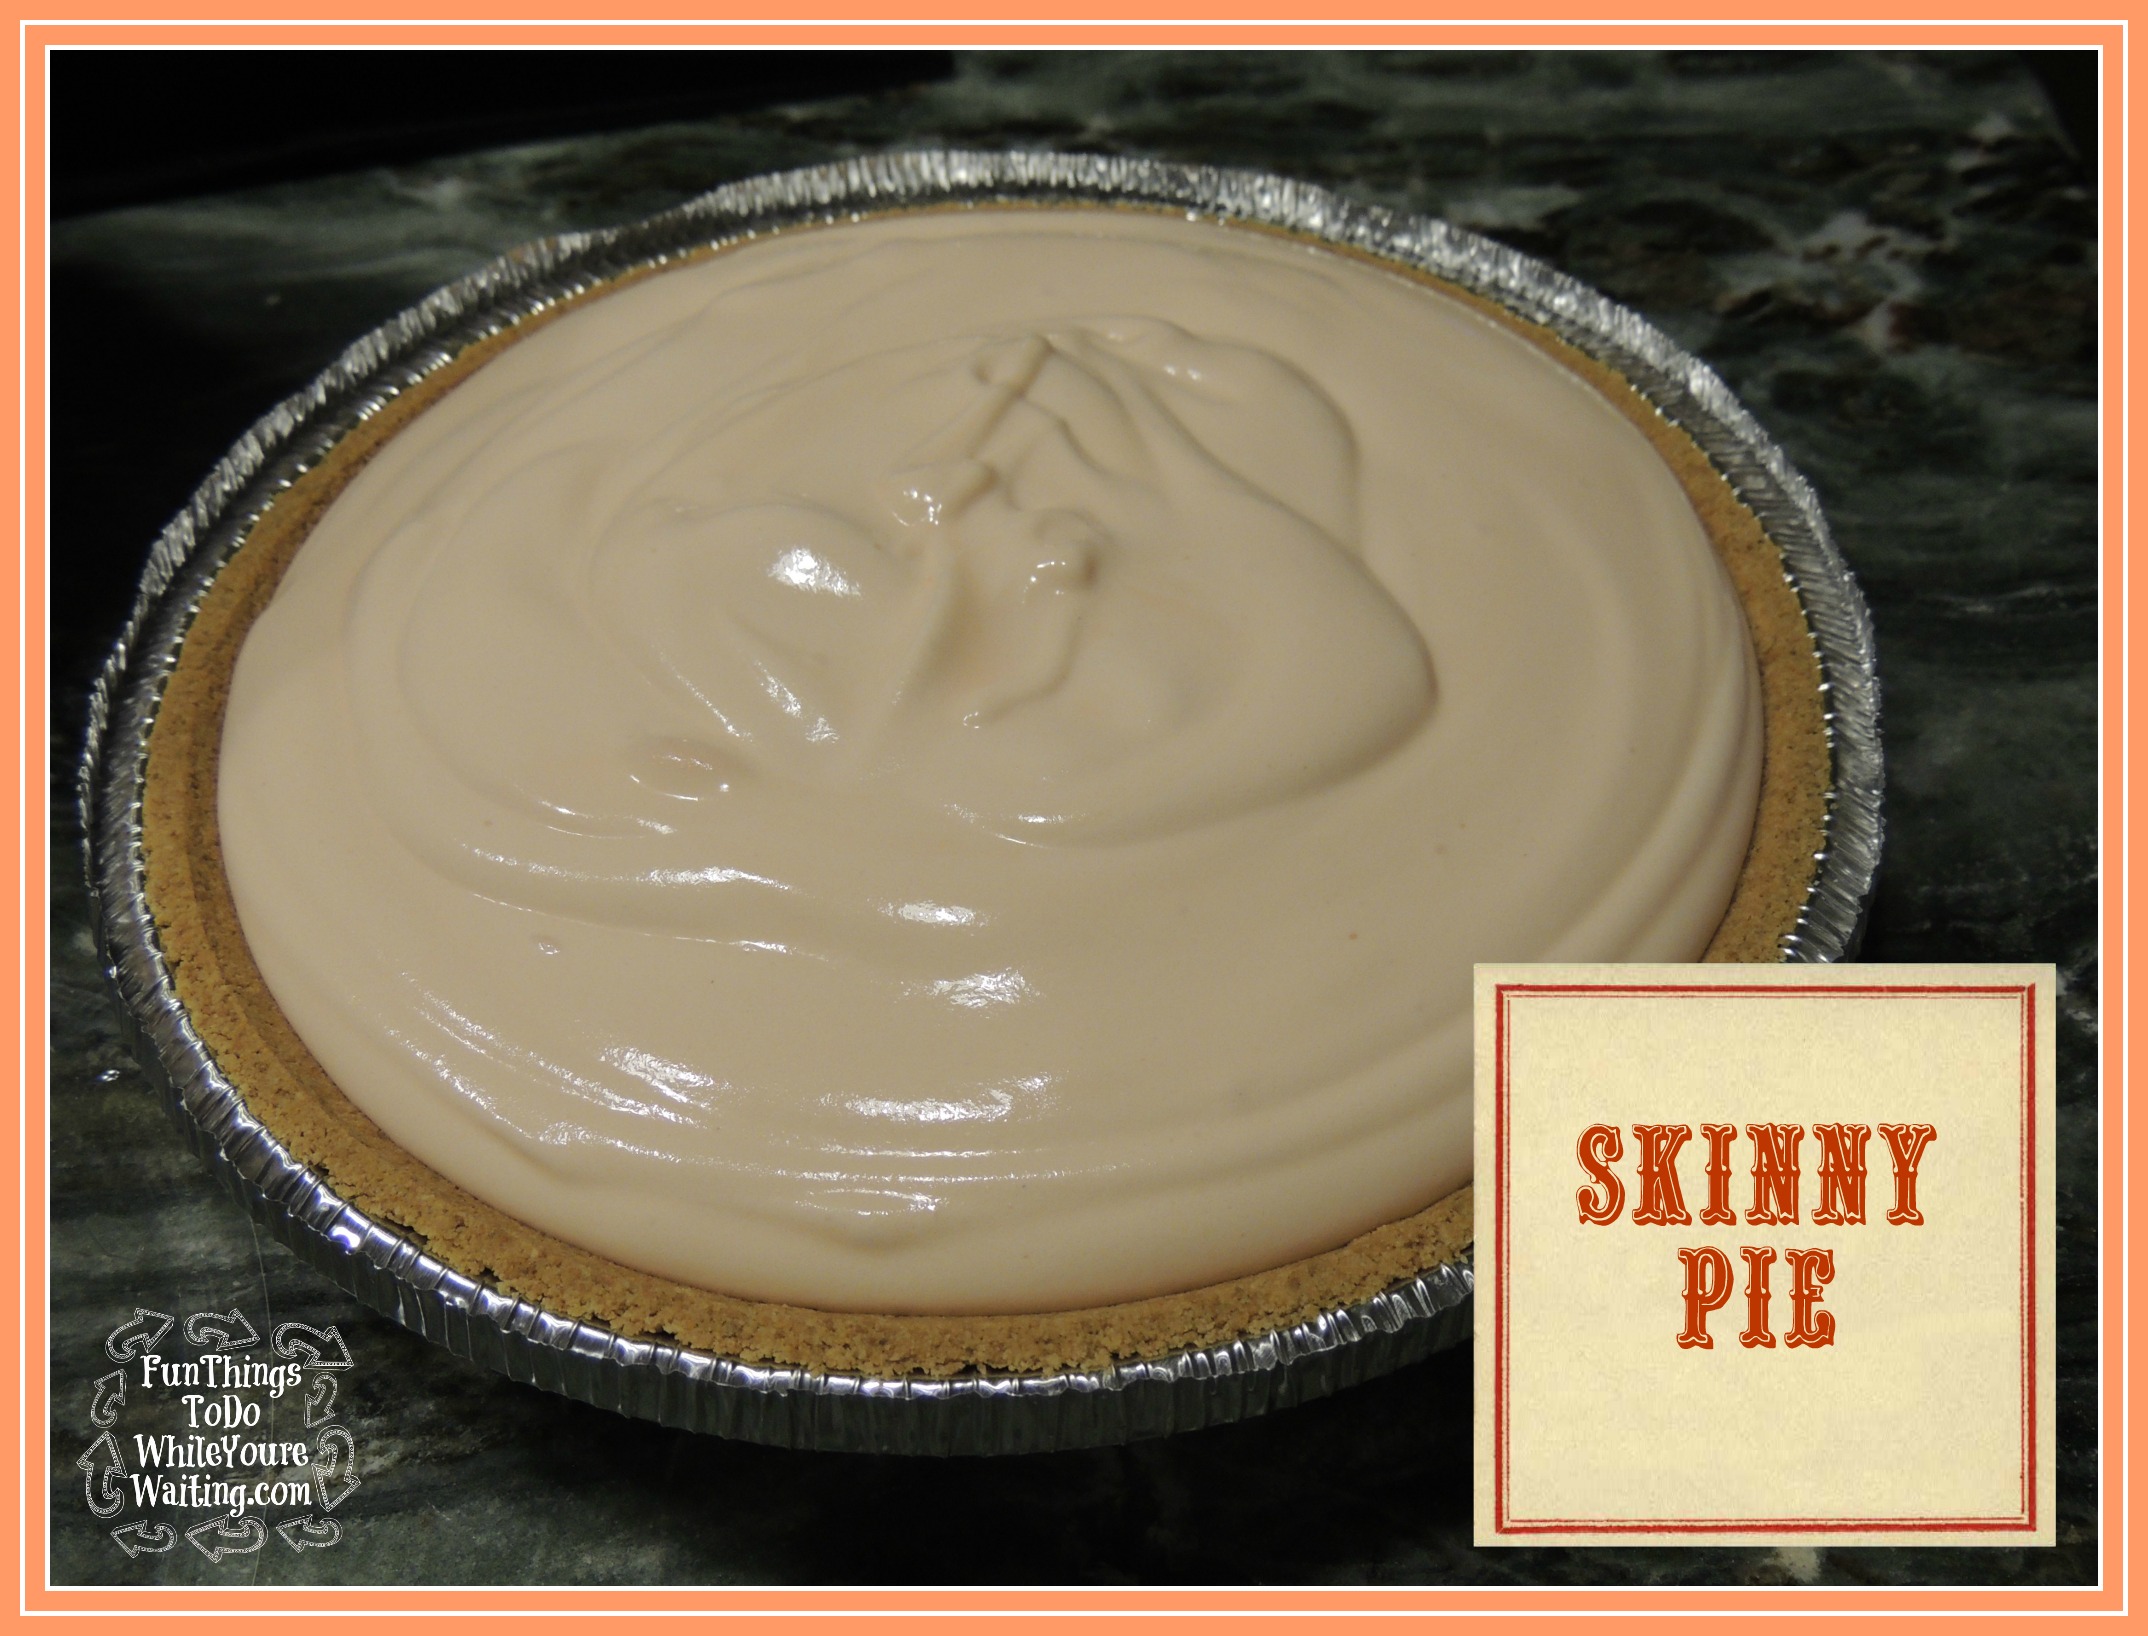 Skinny Pie